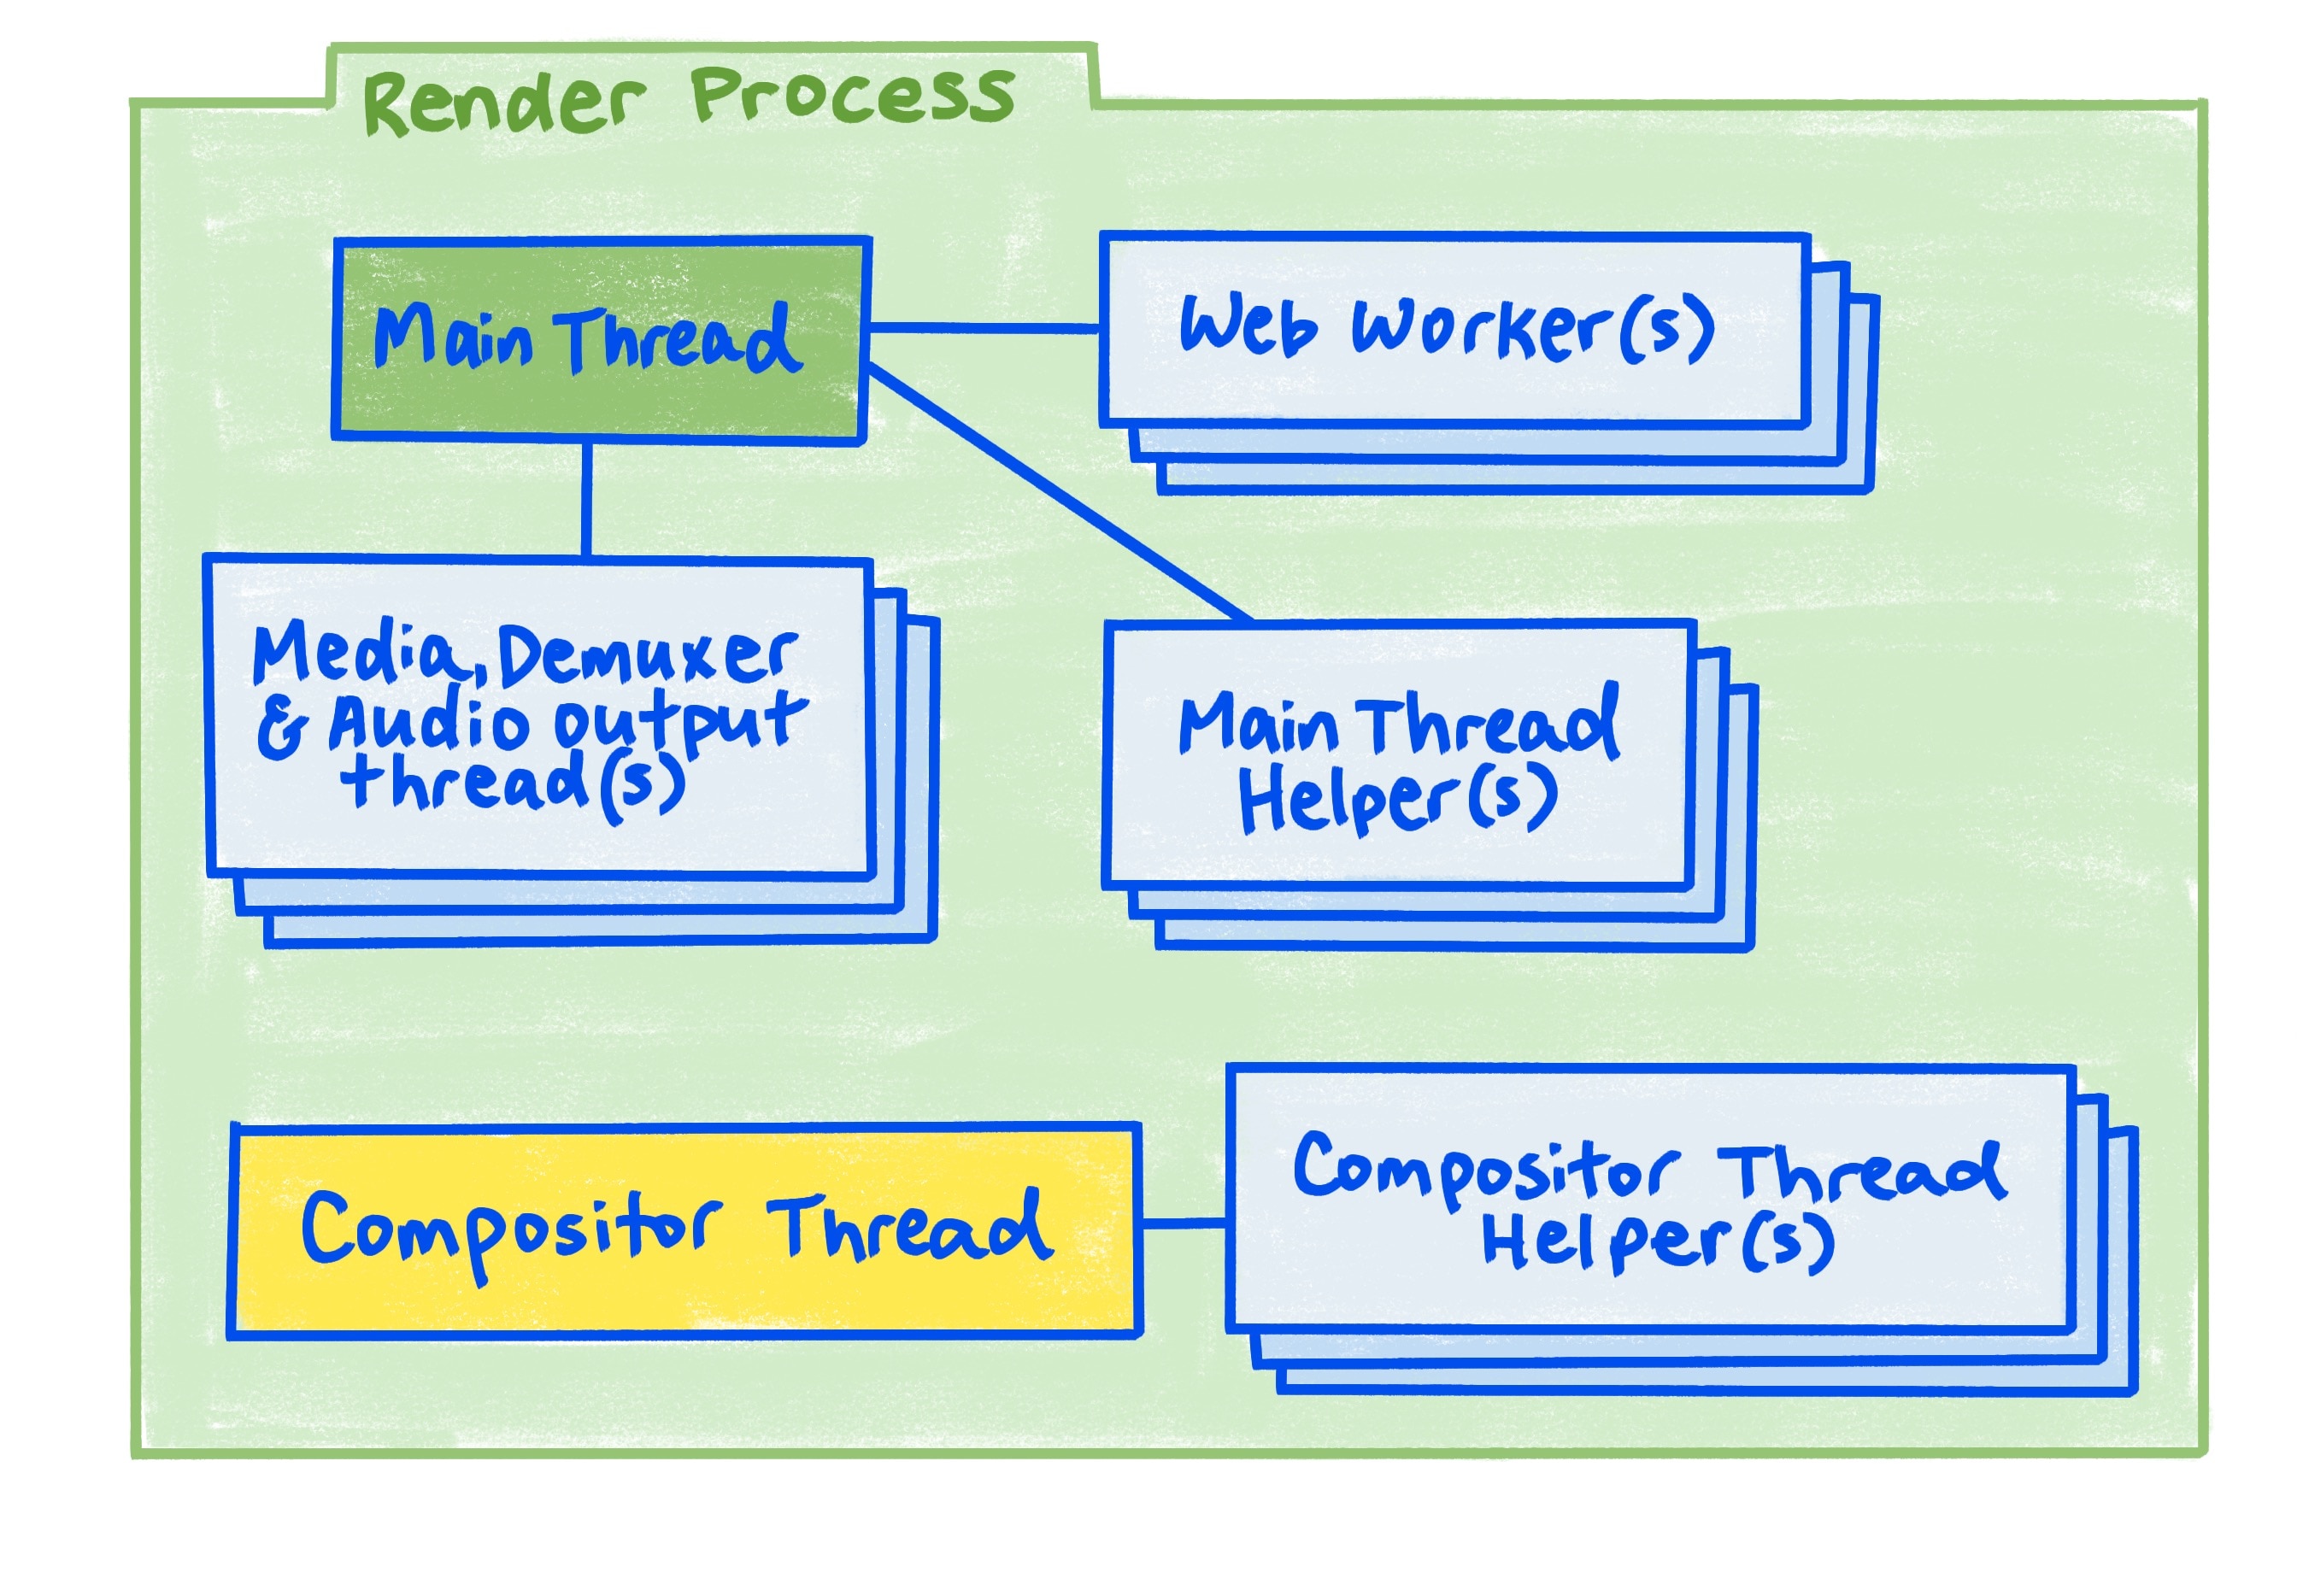 Um diagrama do processo de renderização, conforme descrito no artigo.